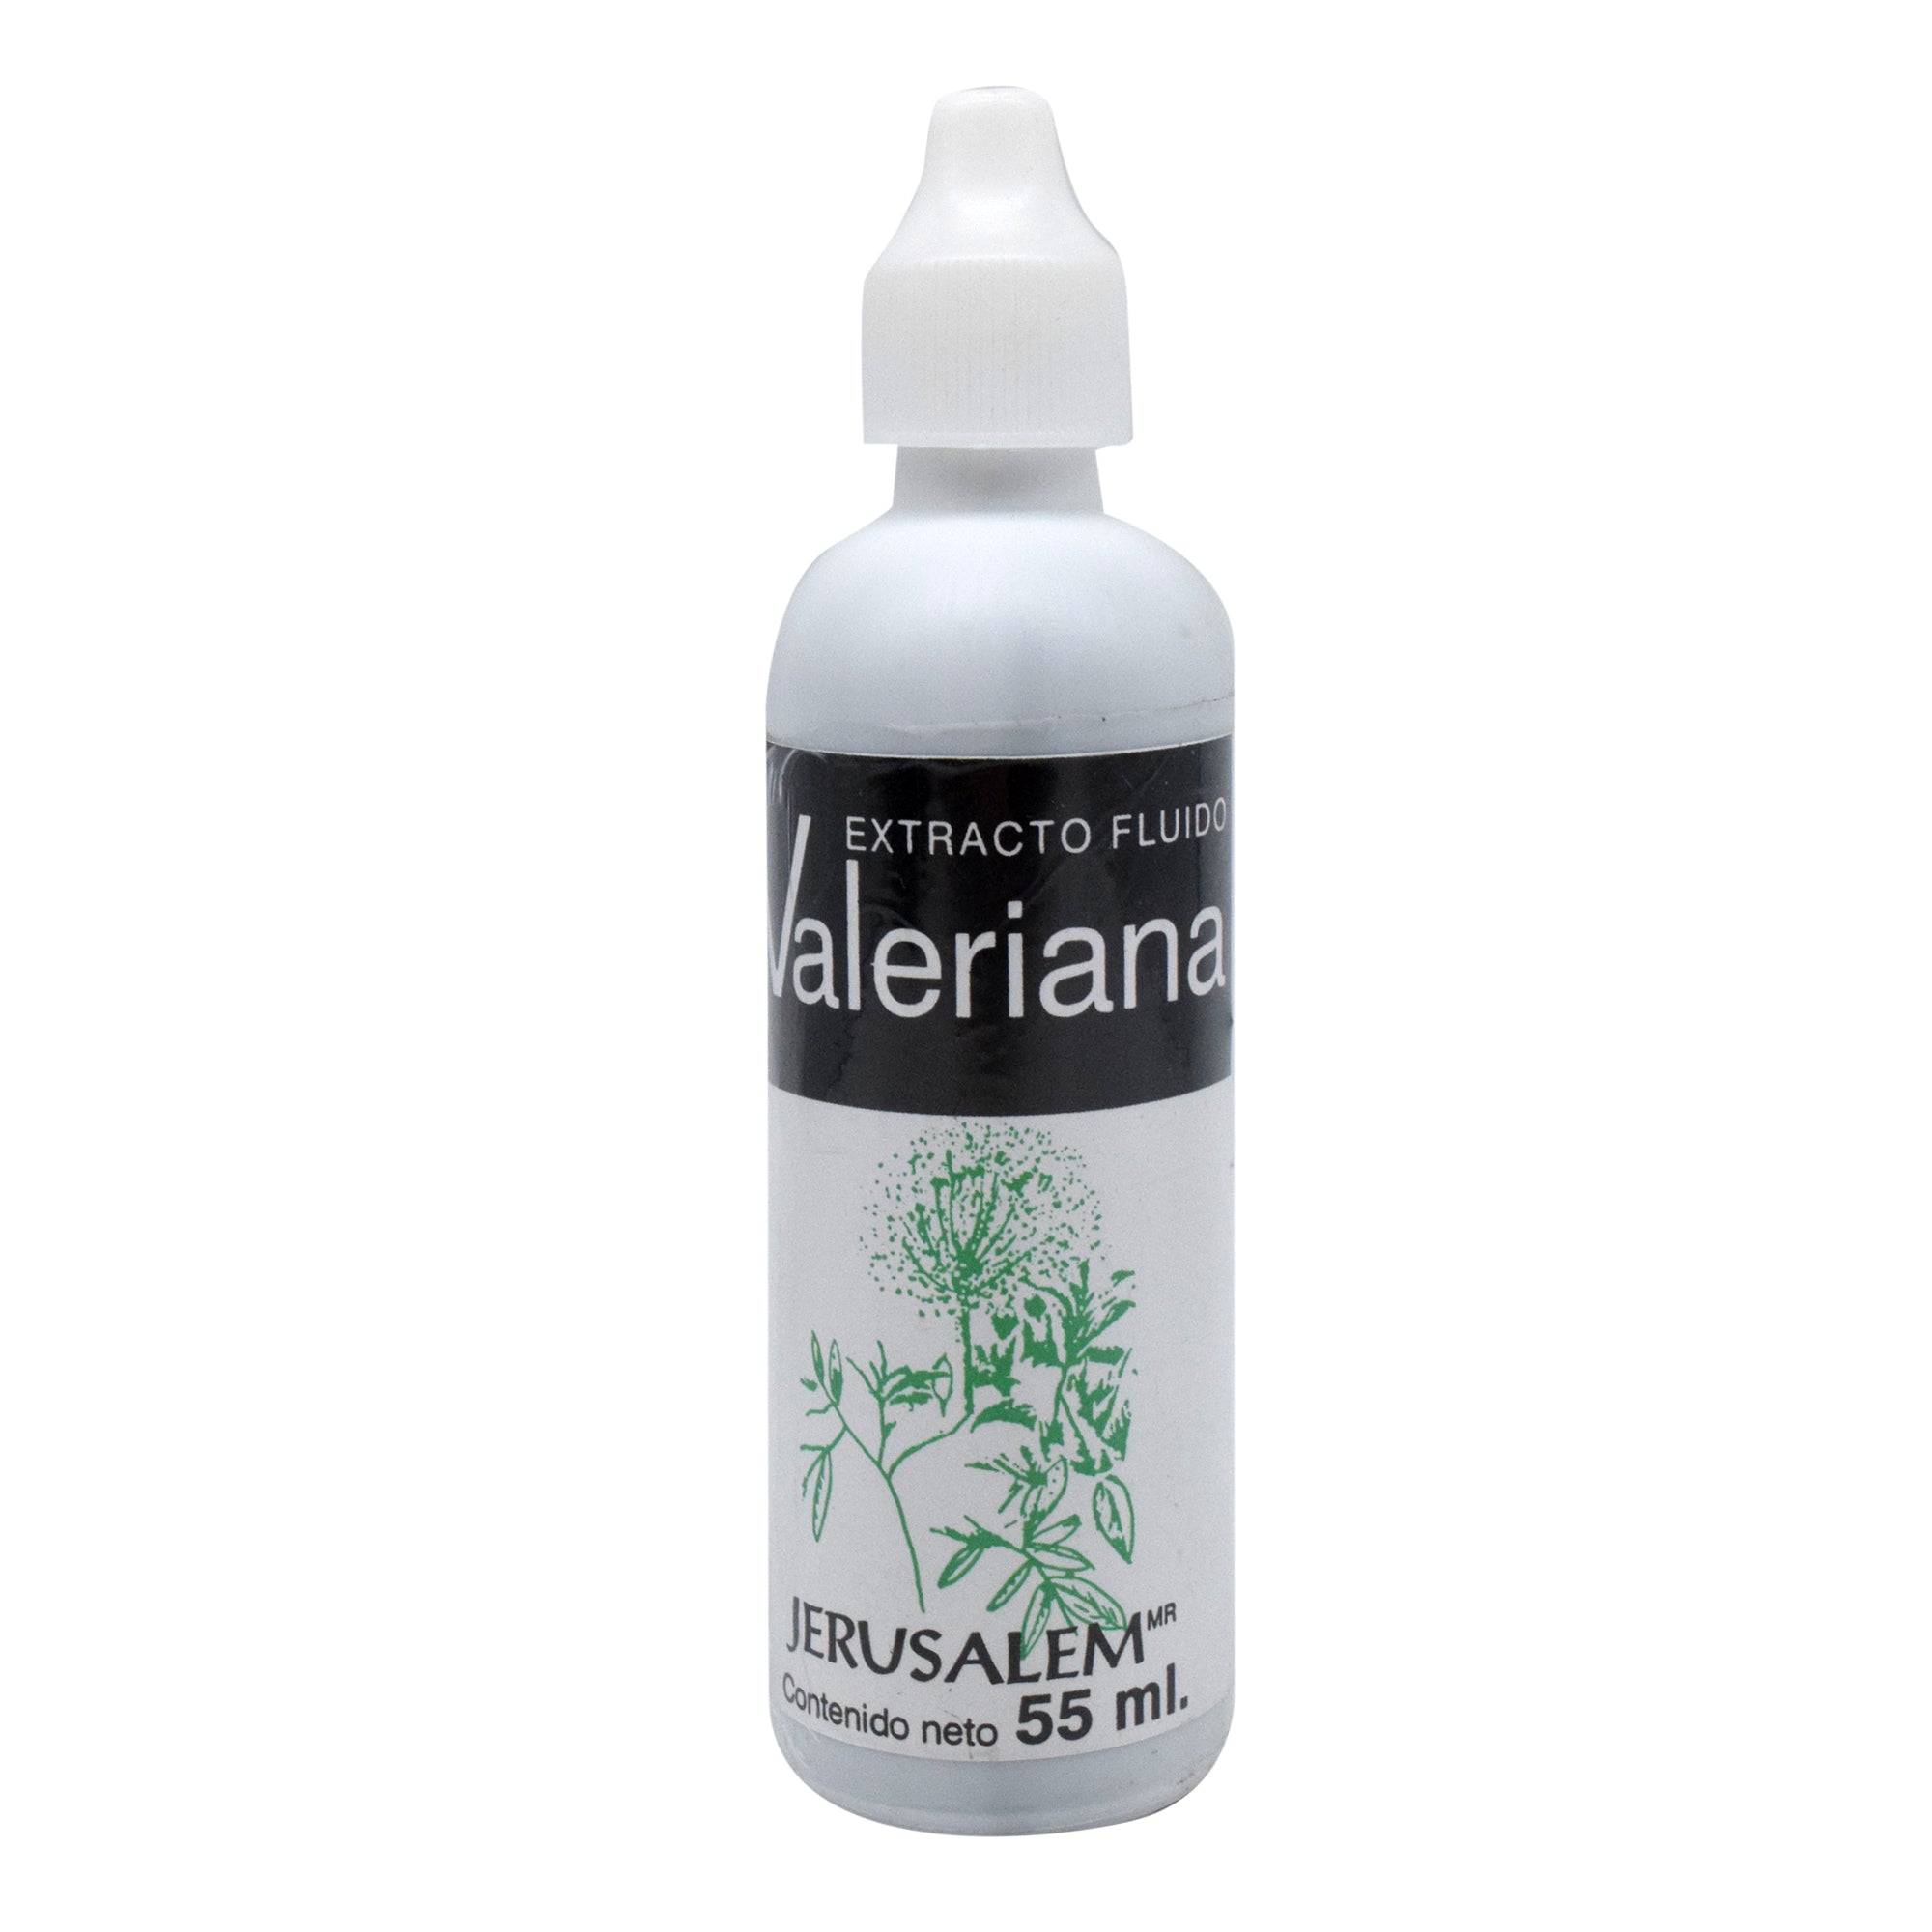 Valeriana extracto 55 ml